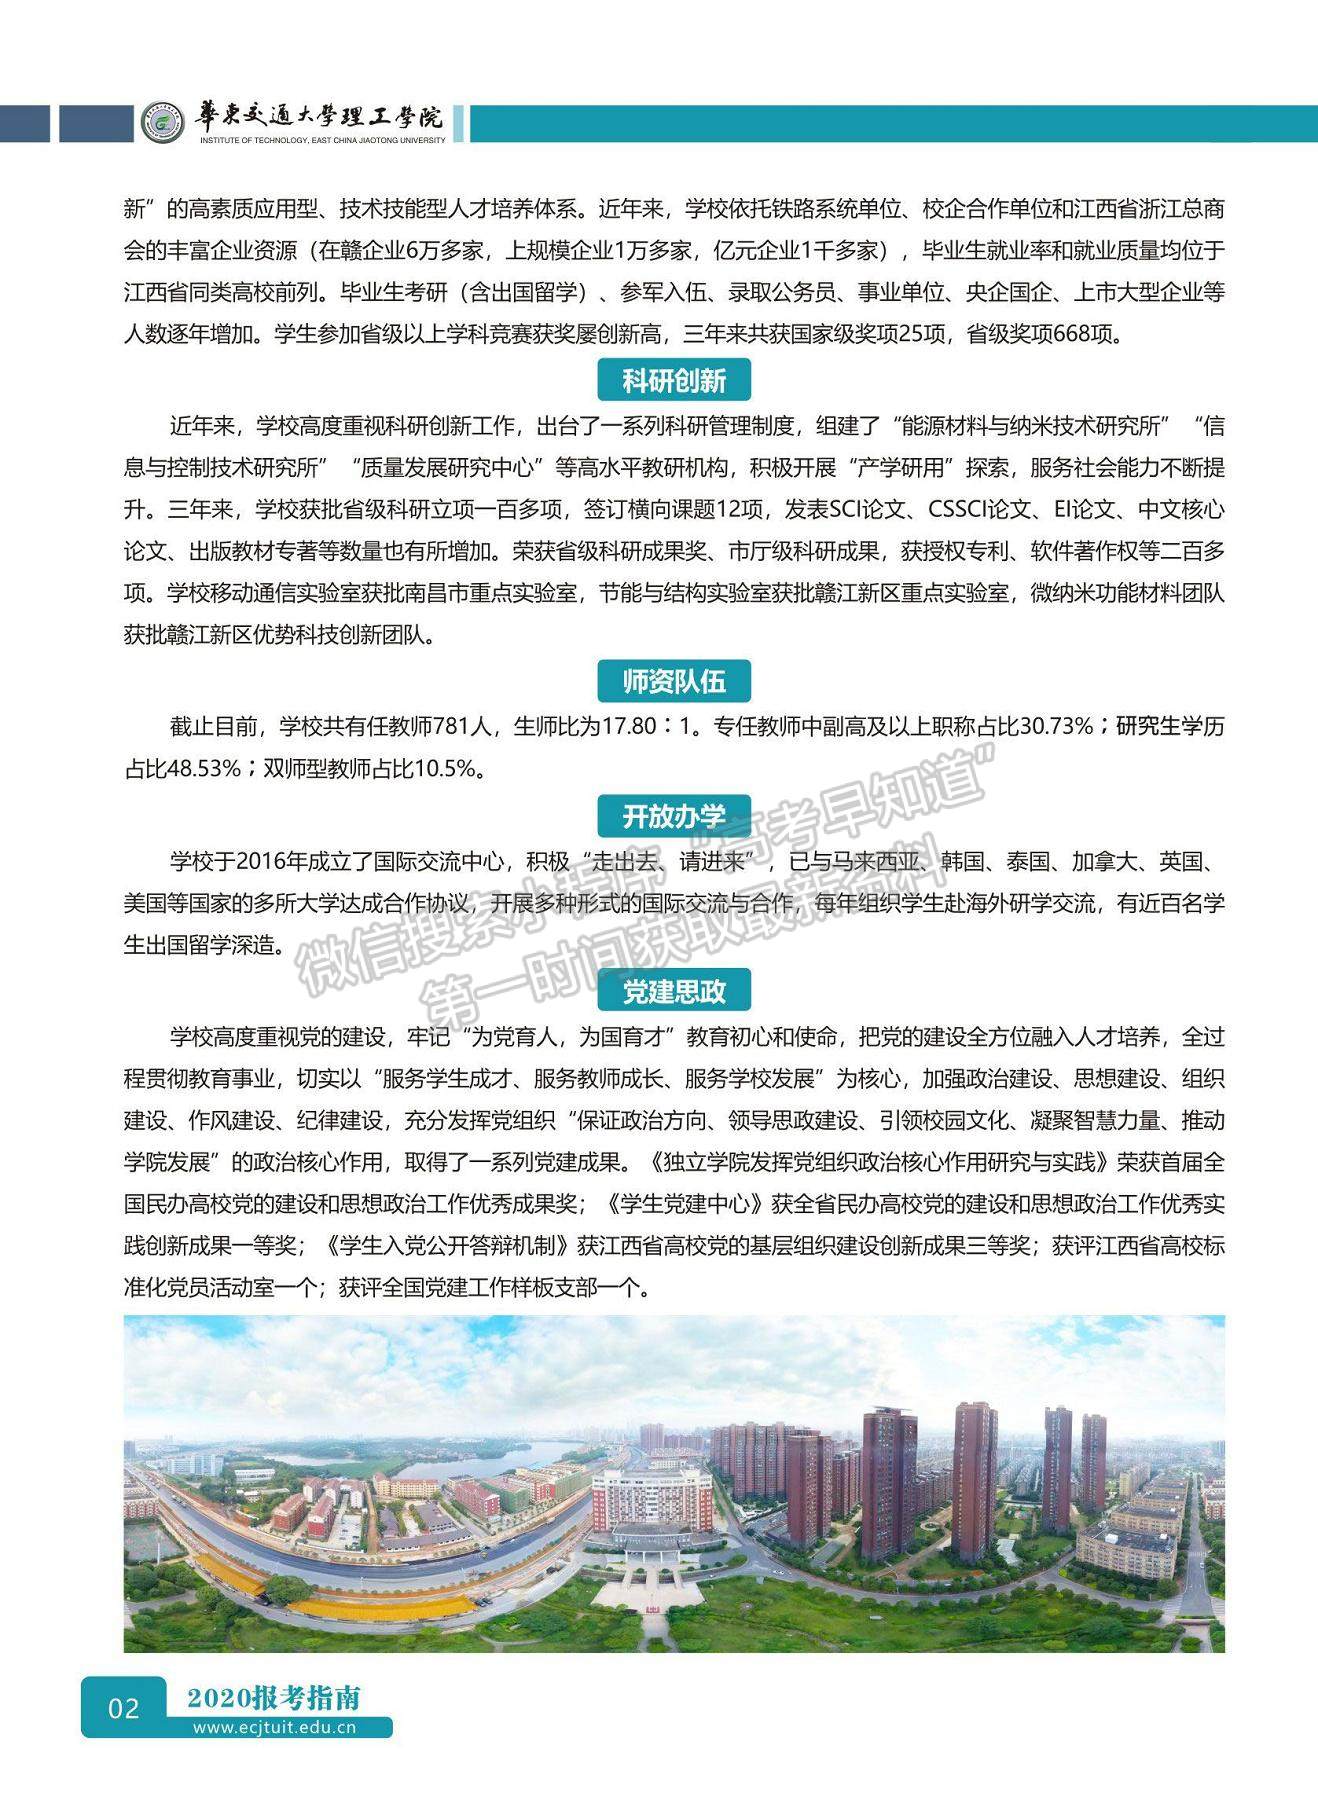 华东交通大学理工学院2020年报考指南